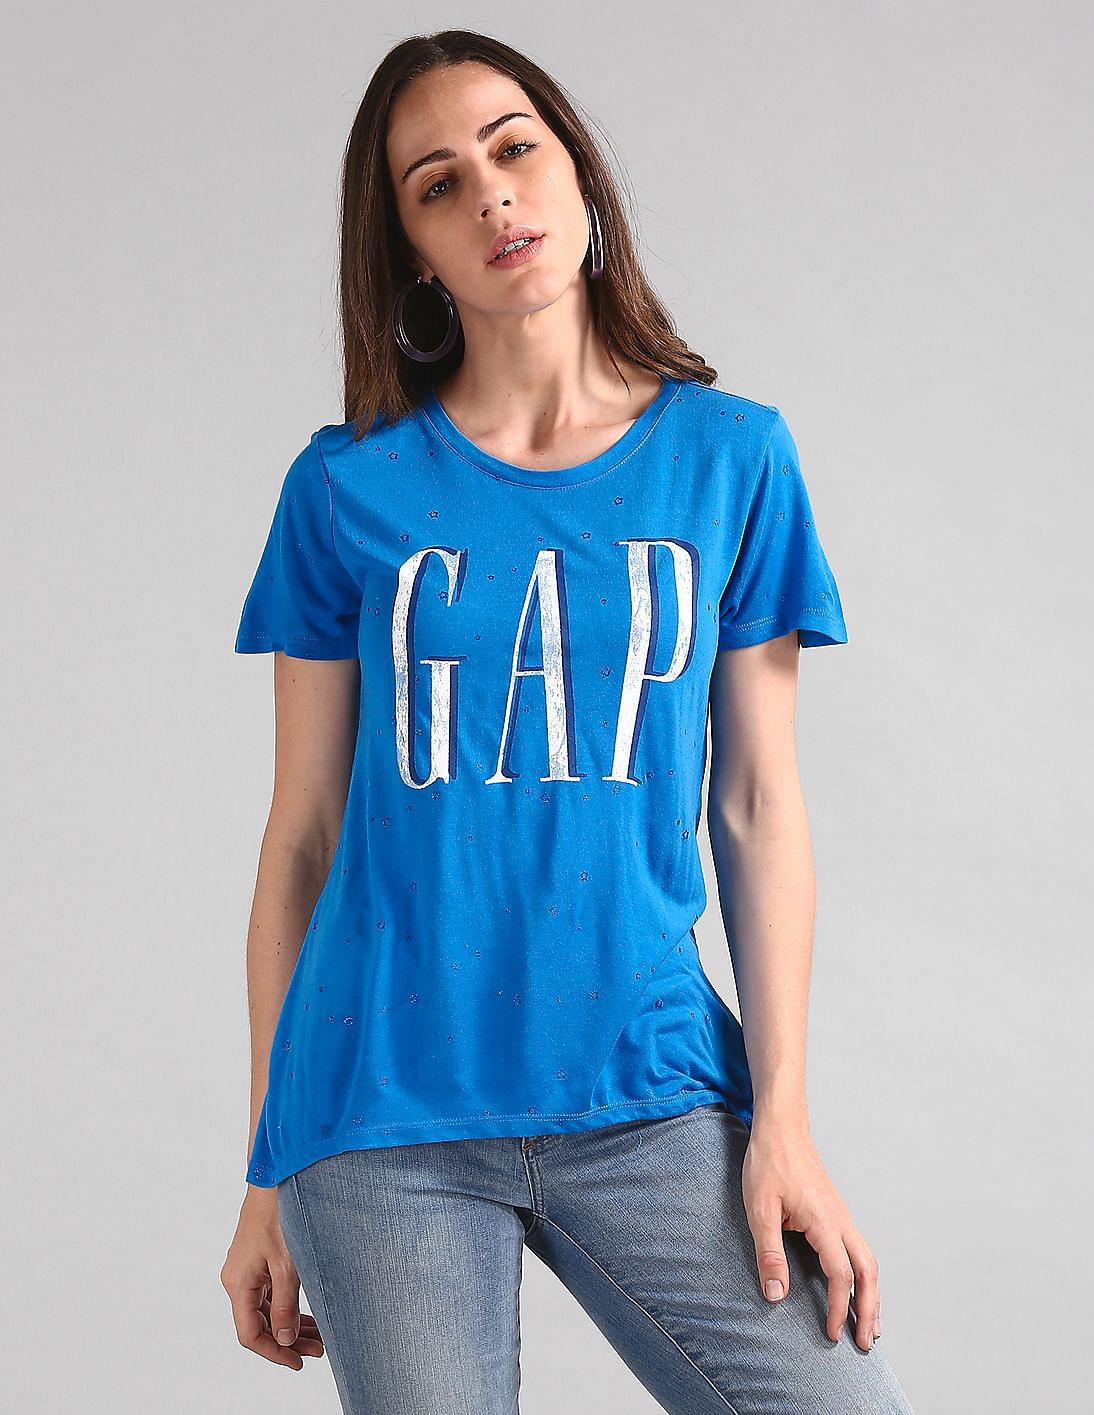 Buy GAP Women Blue Short Sleeve Star Glitter Logo T-Shirt - NNNOW.com